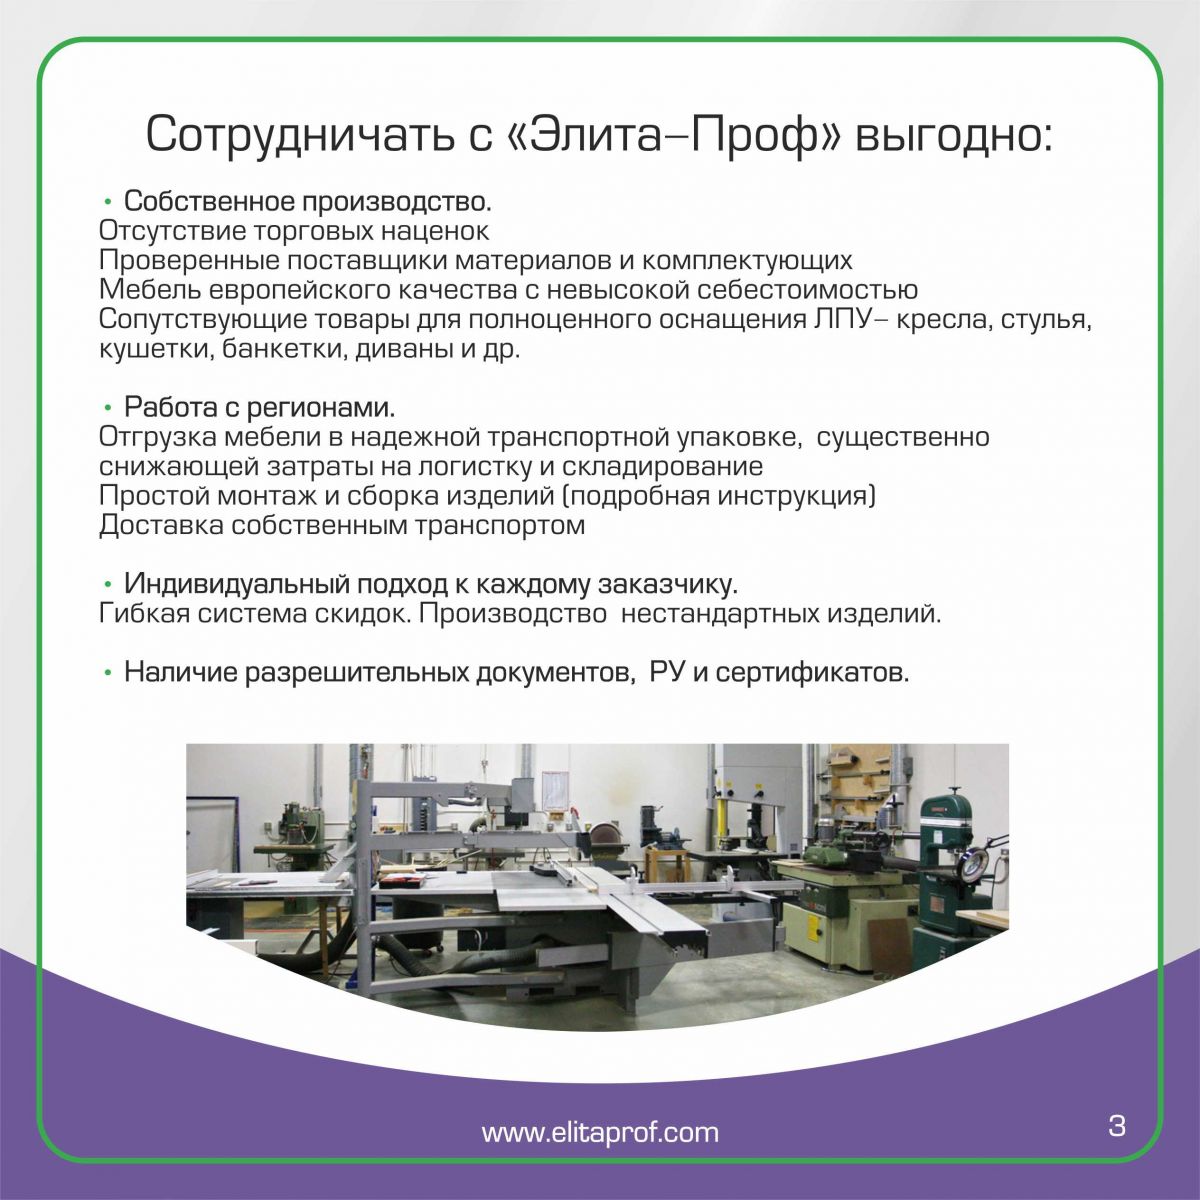 Новый каталог медицинской и лабораторной мебели-3